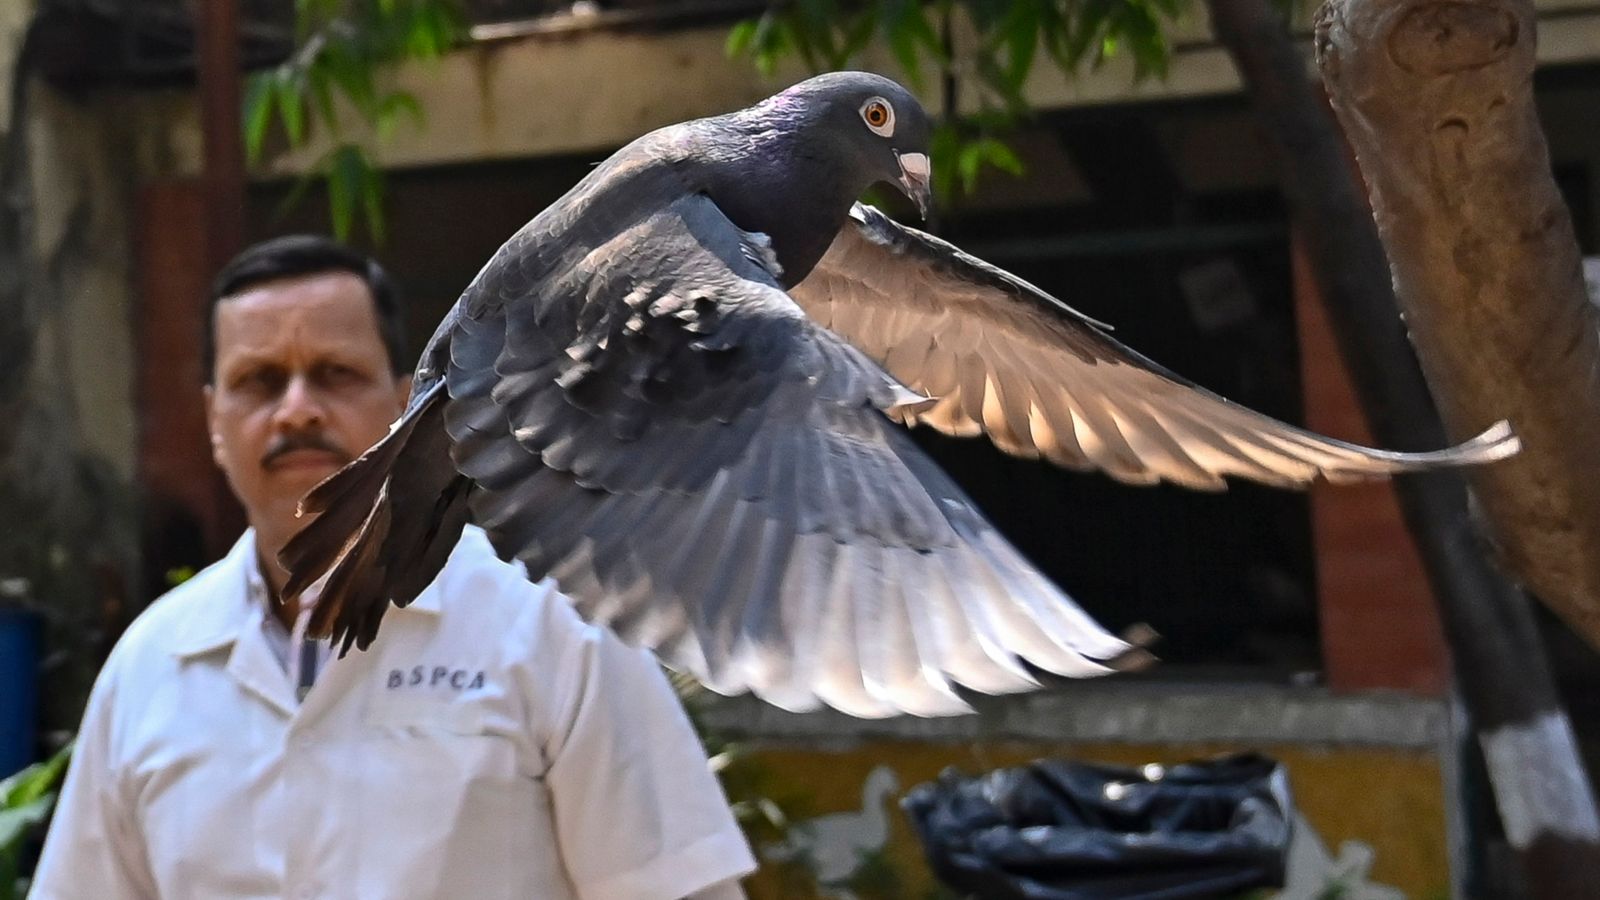 Гълъб, заподозрян като китайски шпионин, е освободен от полицията в Индия, след като е бил задържан в продължение на осем месеца